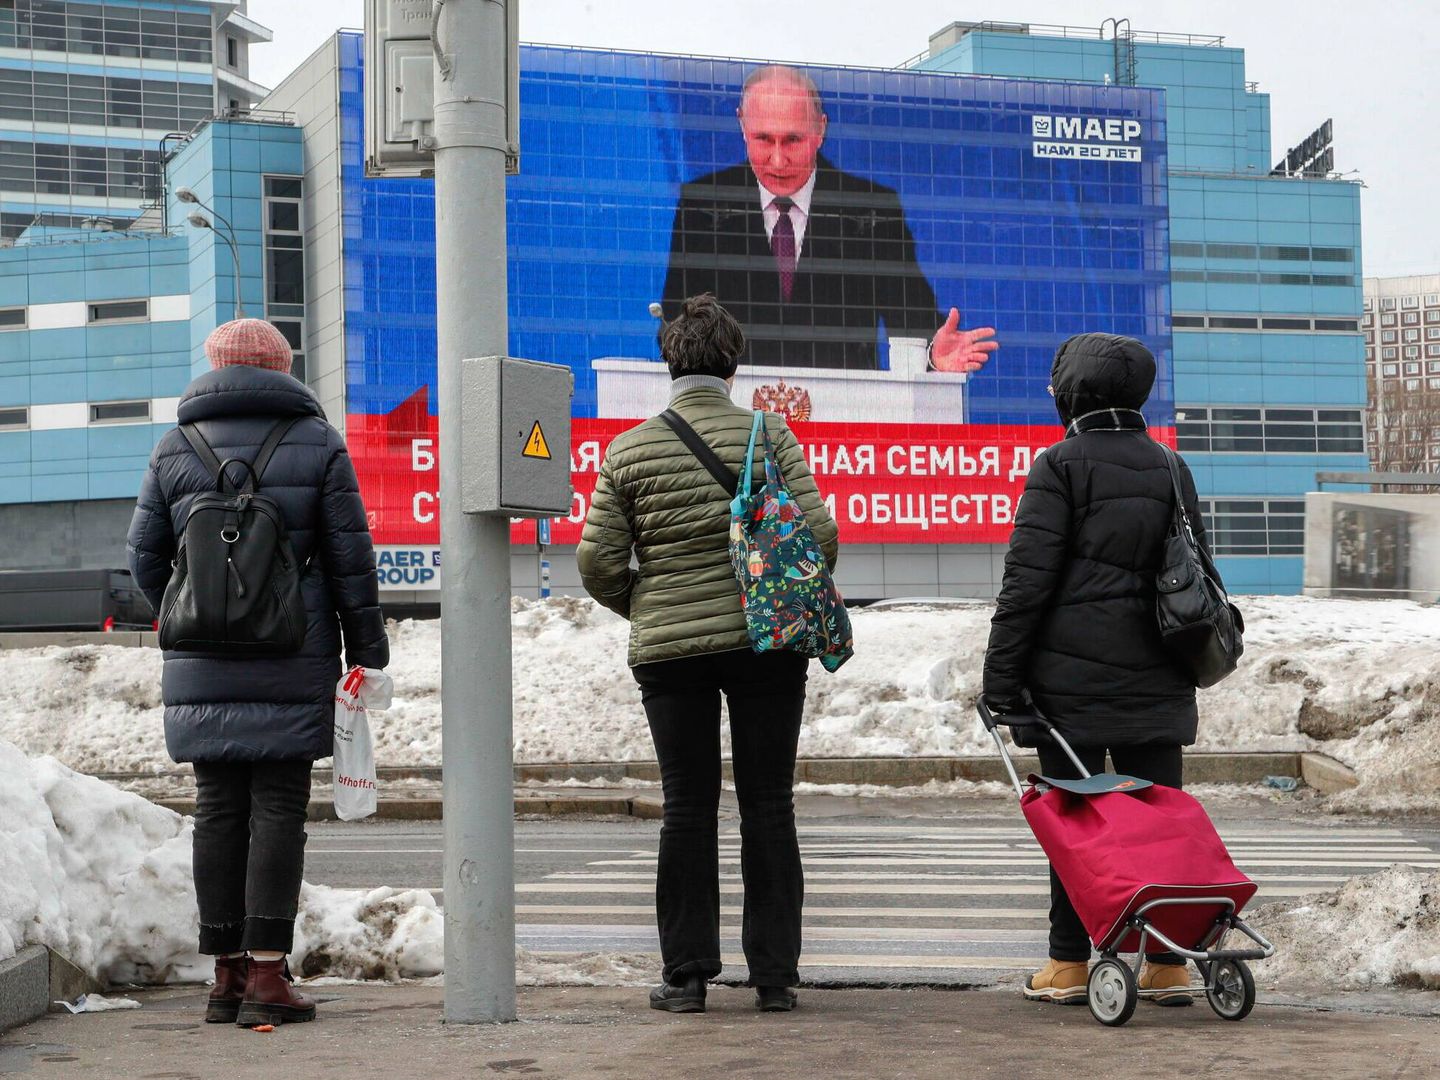 Varios peatones observan a Putin en una pantalla de una calle de Moscú el pasado febrero. (EFE/Maxim Shipenkov)